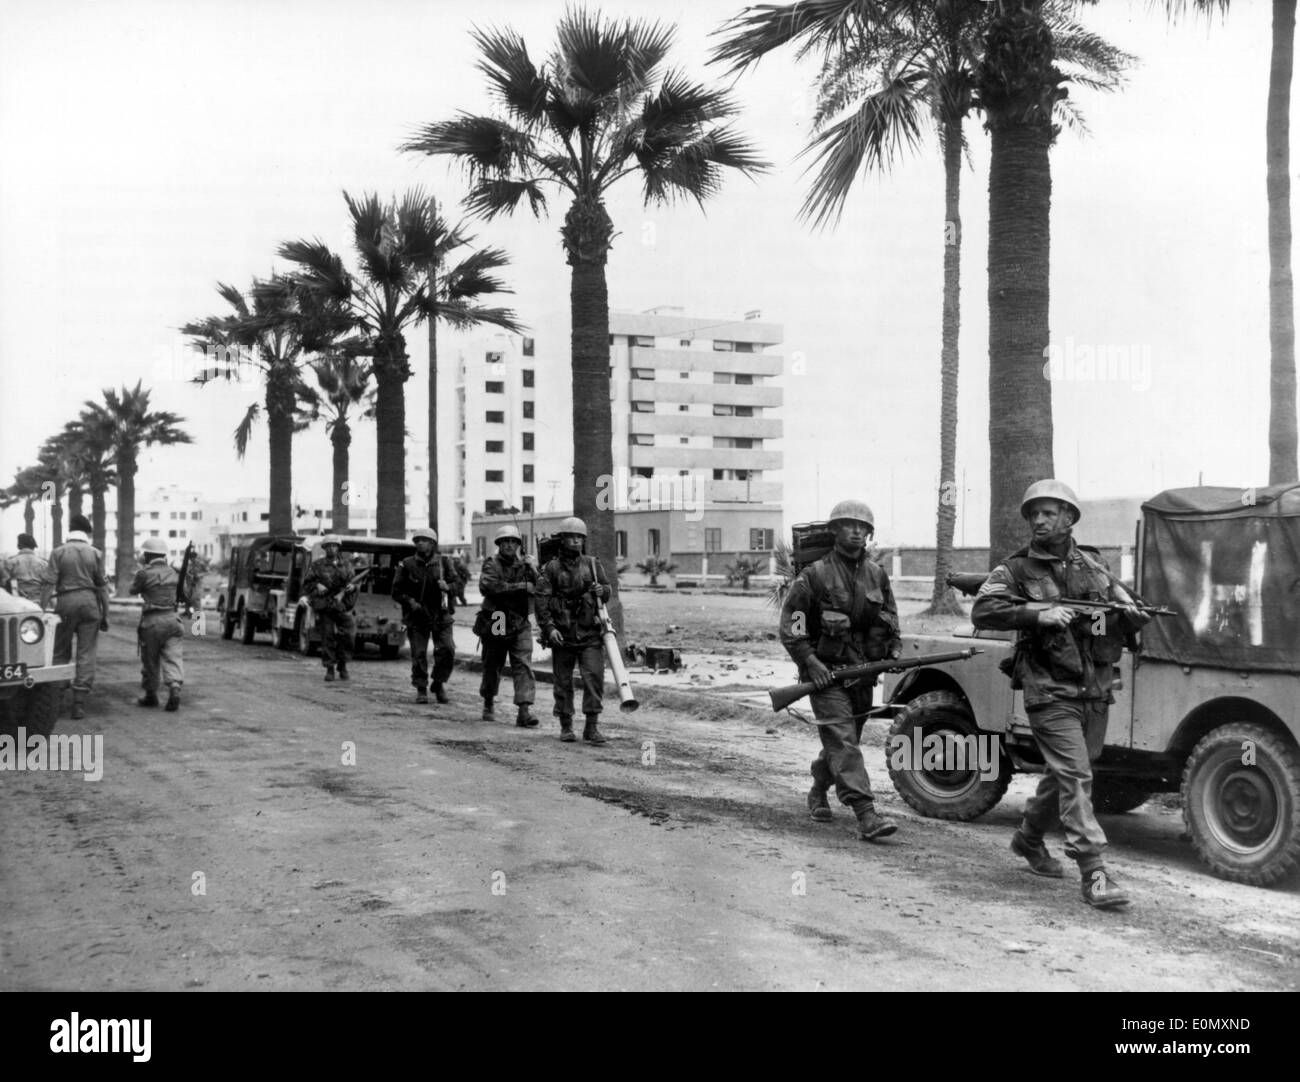 ج - 3 تـمـعـنـوا في هذه الـخـرائـط وستعلموا كيف كان الـعـدوان الـثـلاثي 1956 British-soldiers-marching-in-port-said-during-suez-crisis-E0MXND